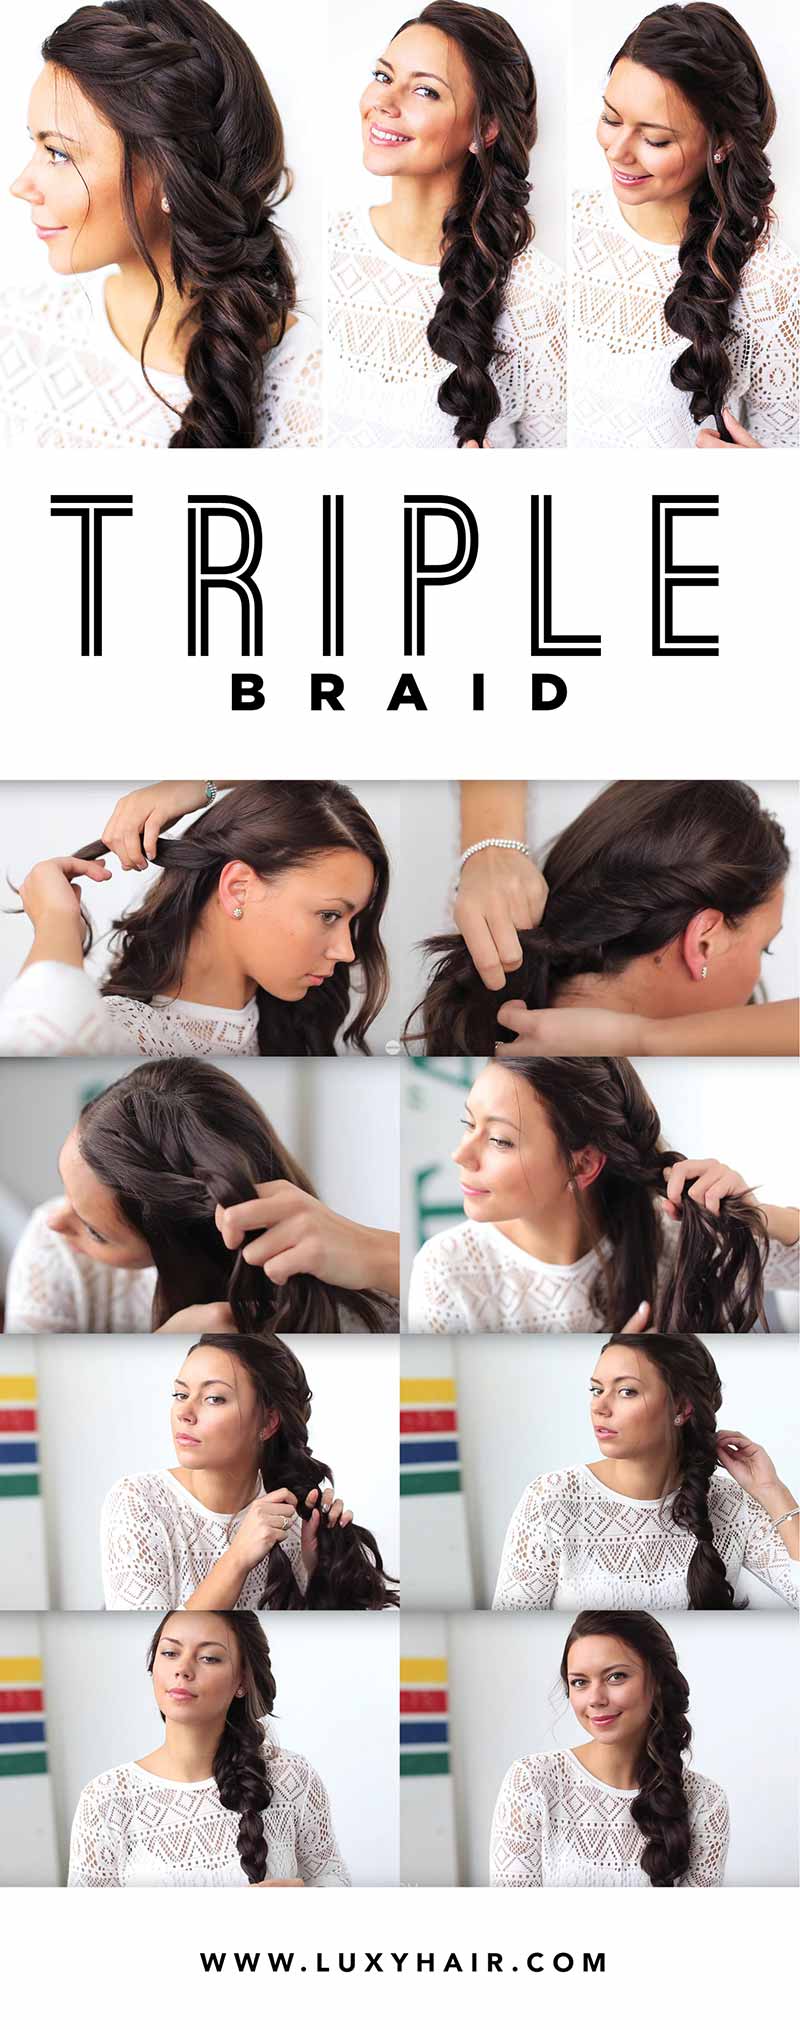 Triple braid